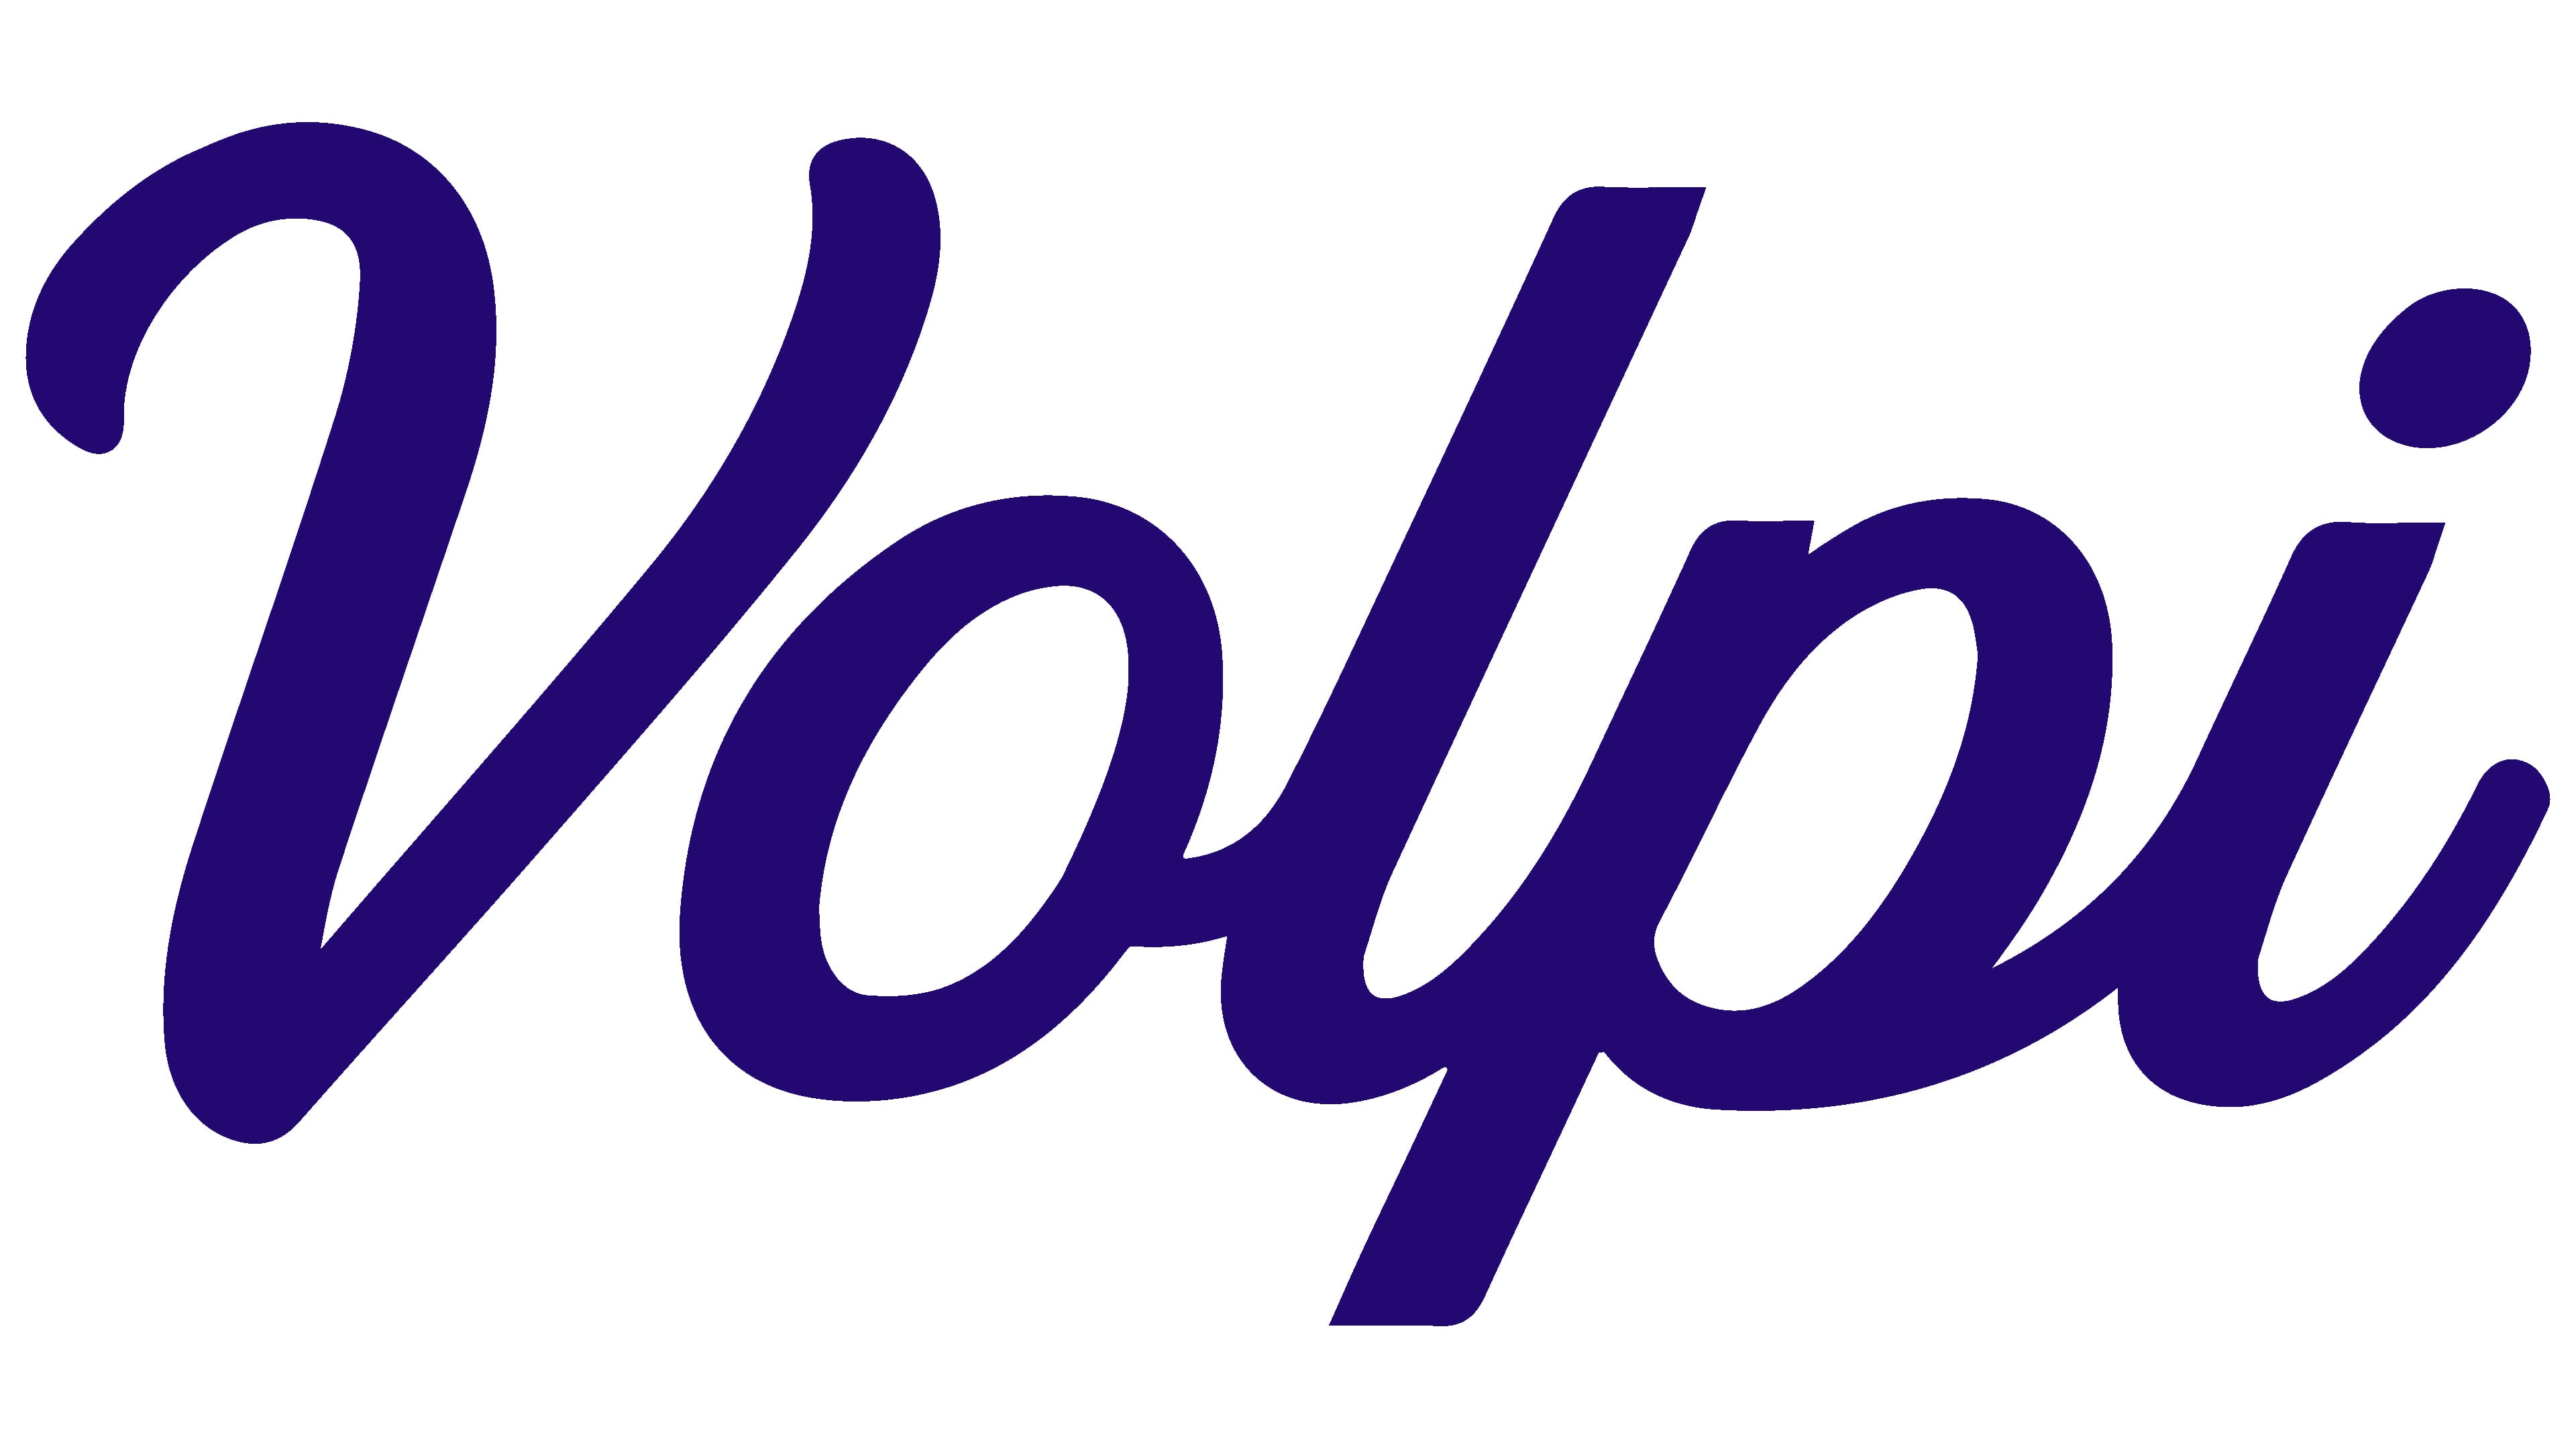 Volpi Logo